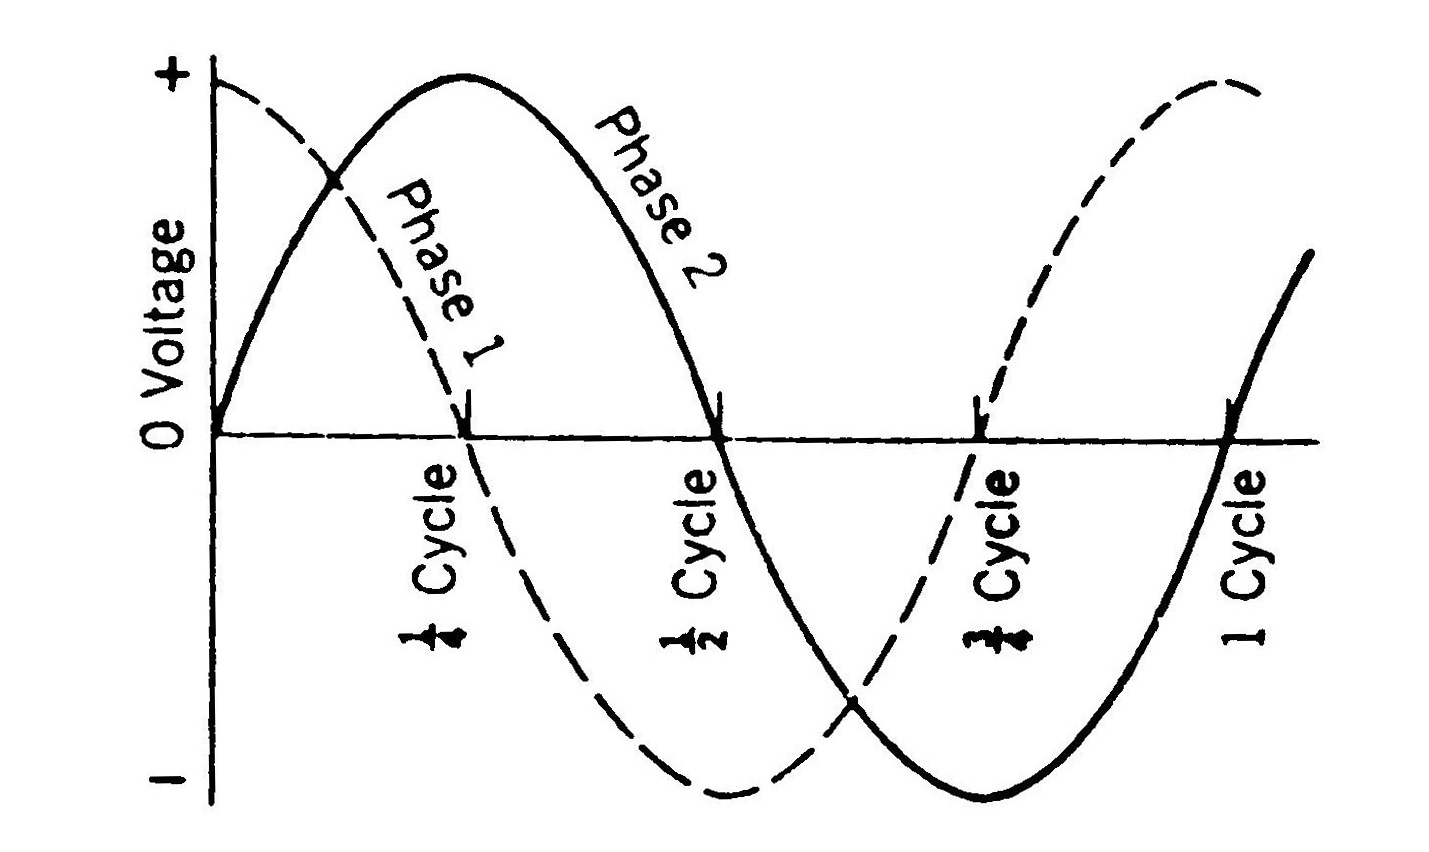 نمایش شکل موج تولیدی توسط مدار